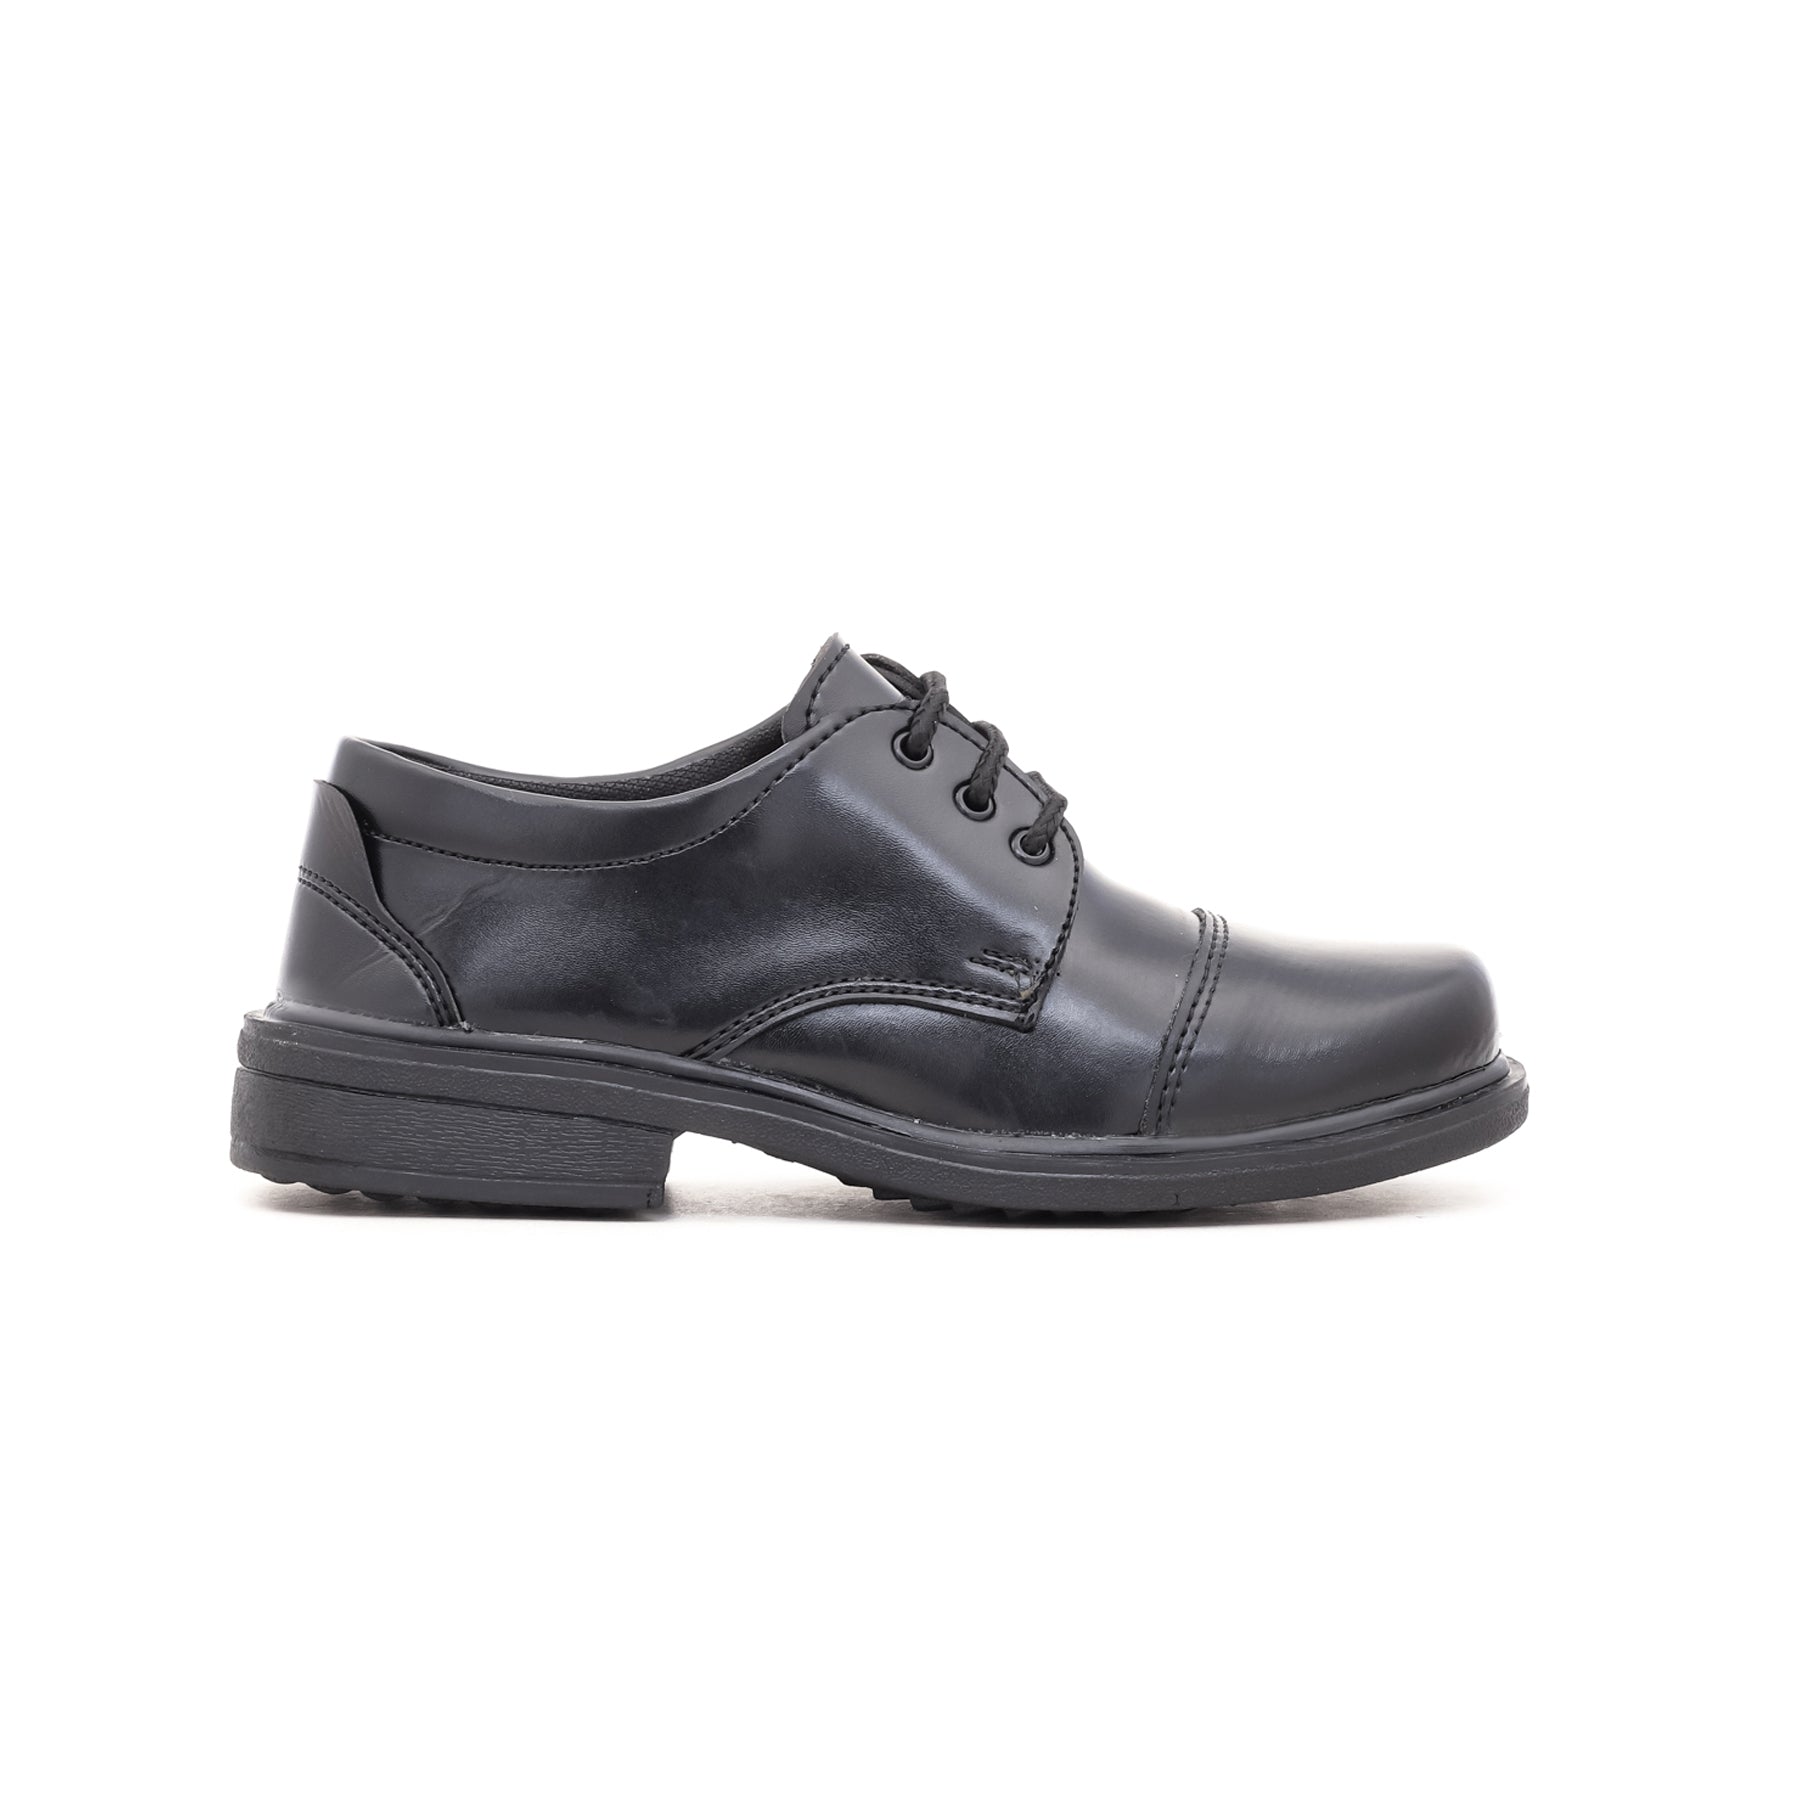 Boys Black School Shoes SK1034